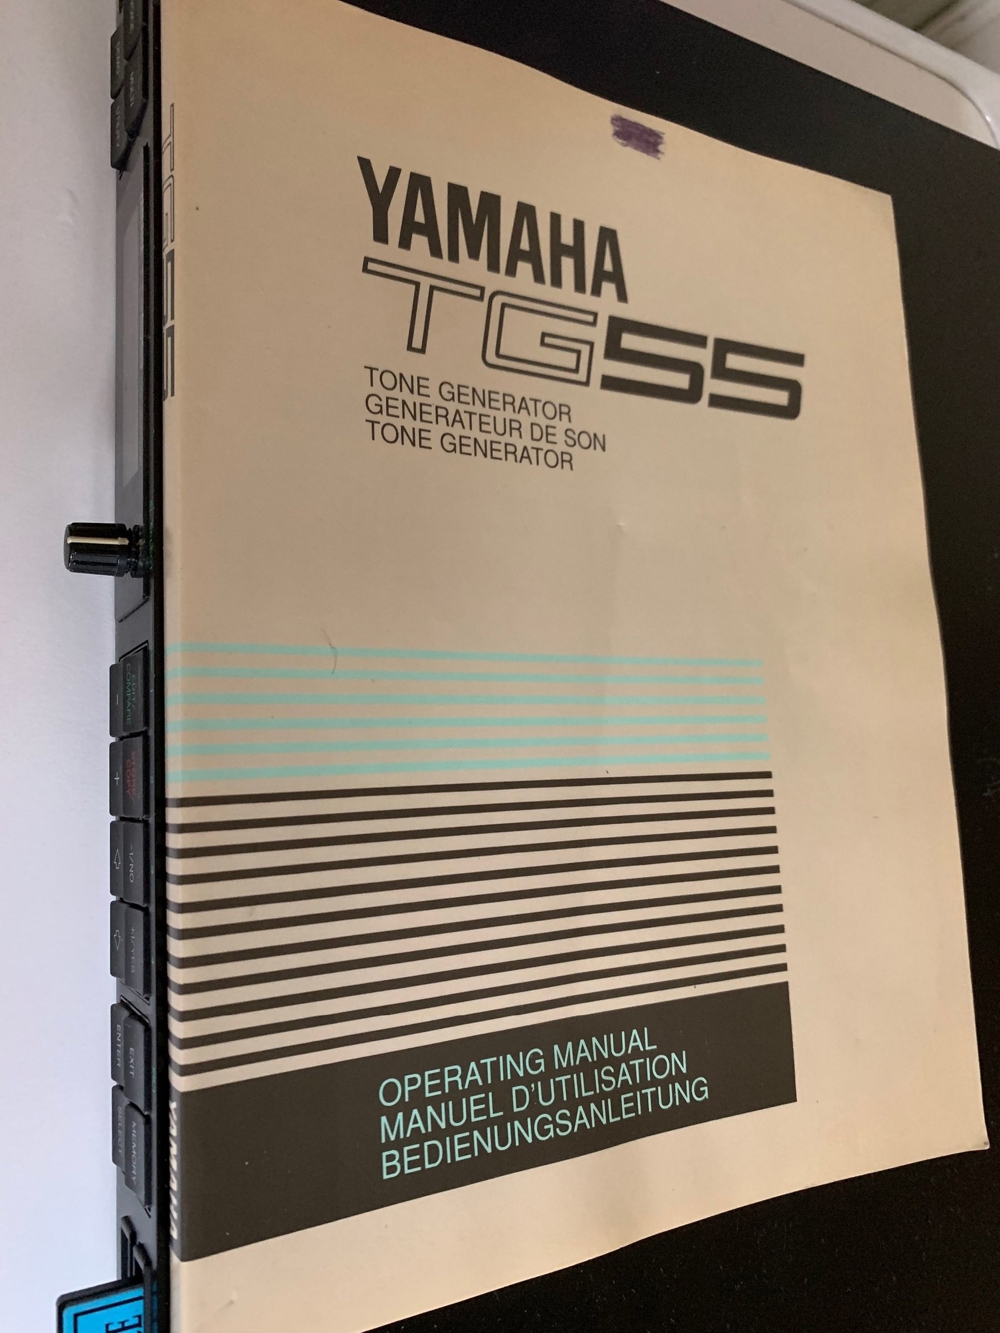 YAMAHA TG 55 Synthesizer Tone Generator